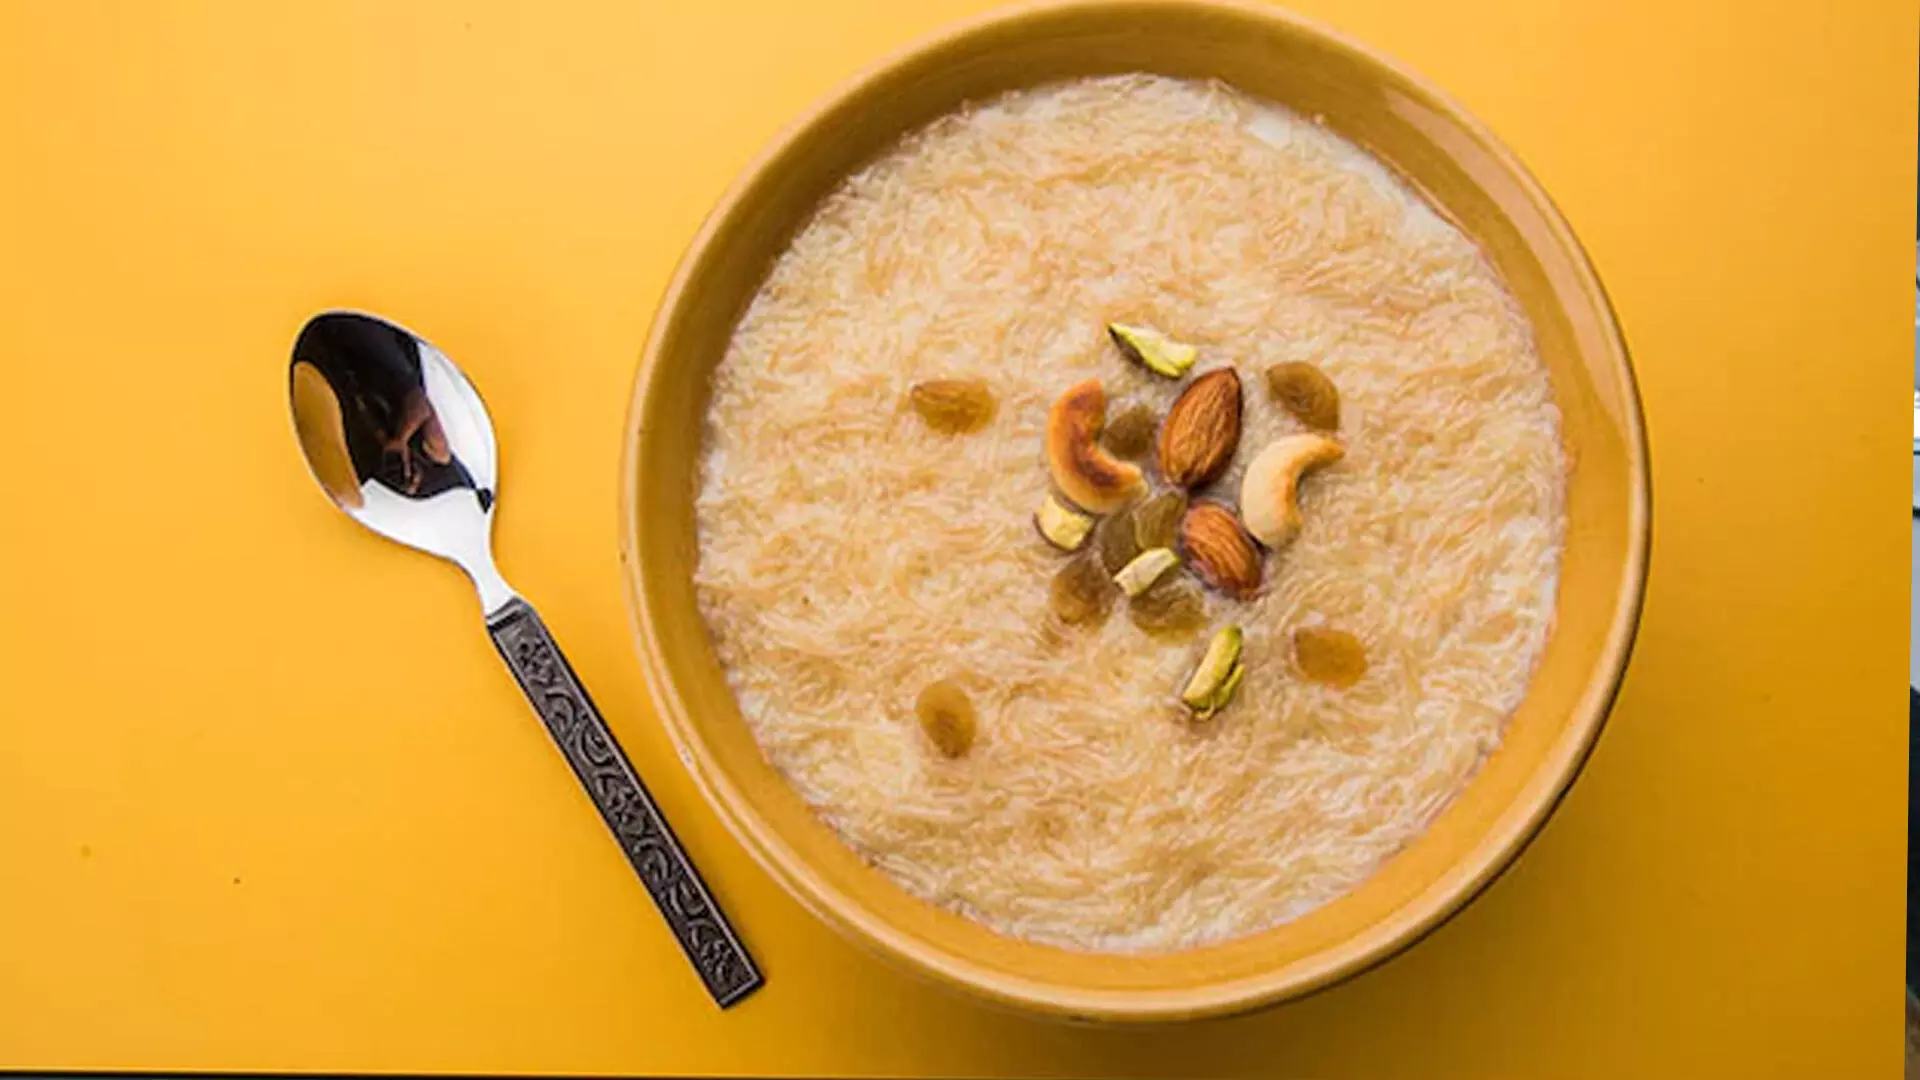 ईद-उल-फितर विशेष भोजन जो मीठी ईद के दौरान बनाये